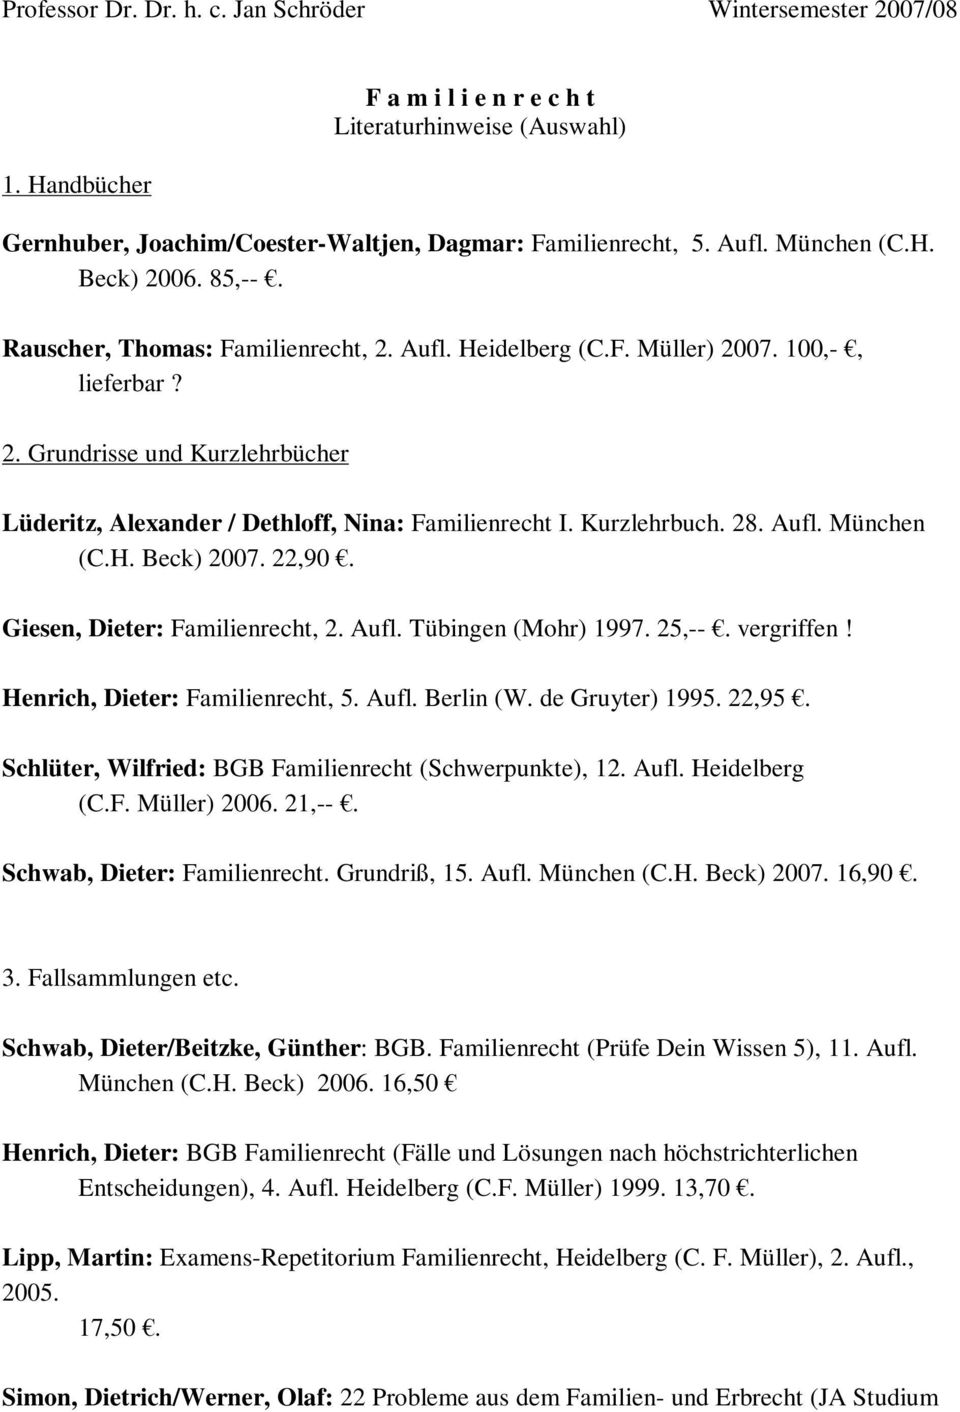 Kurzlehrbuch. 28. Aufl. München (C.H. Beck) 2007. 22,90. Giesen, Dieter: Familienrecht, 2. Aufl. Tübingen (Mohr) 1997. 25,--. vergriffen! Henrich, Dieter: Familienrecht, 5. Aufl. Berlin (W.